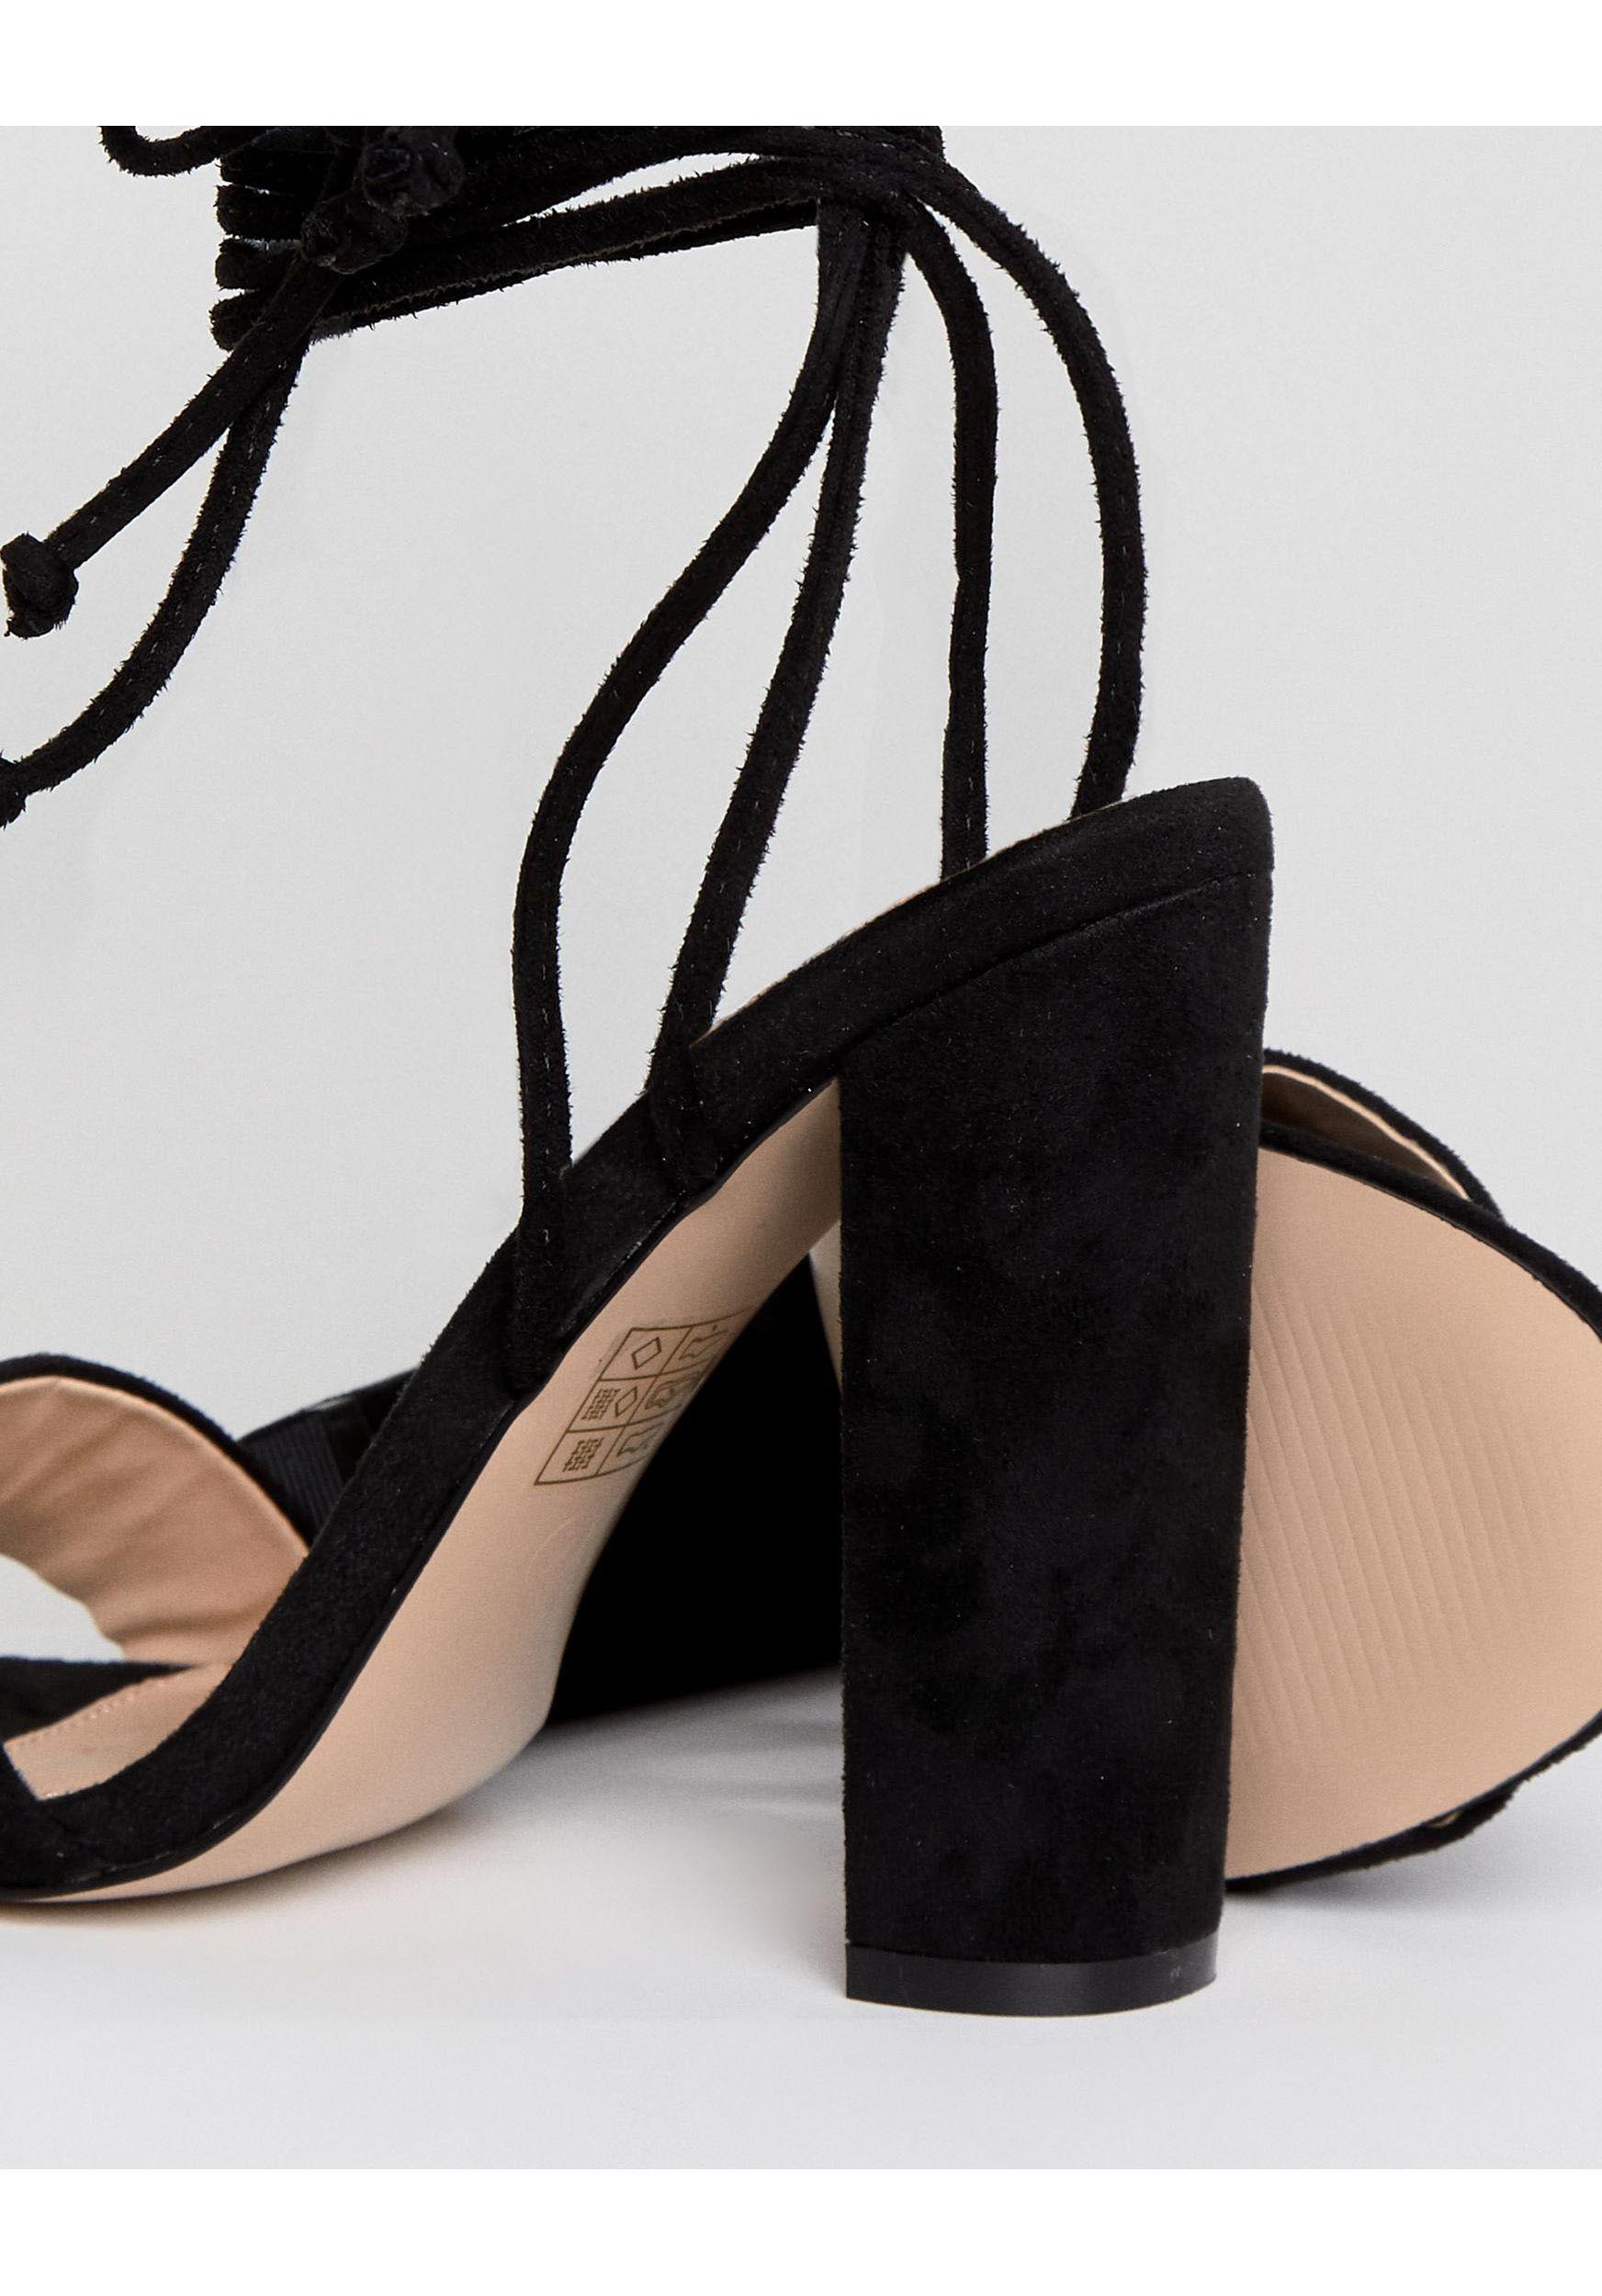 Public Desire Suzu Tie Up Block Heeled Sandals in Black - Lyst